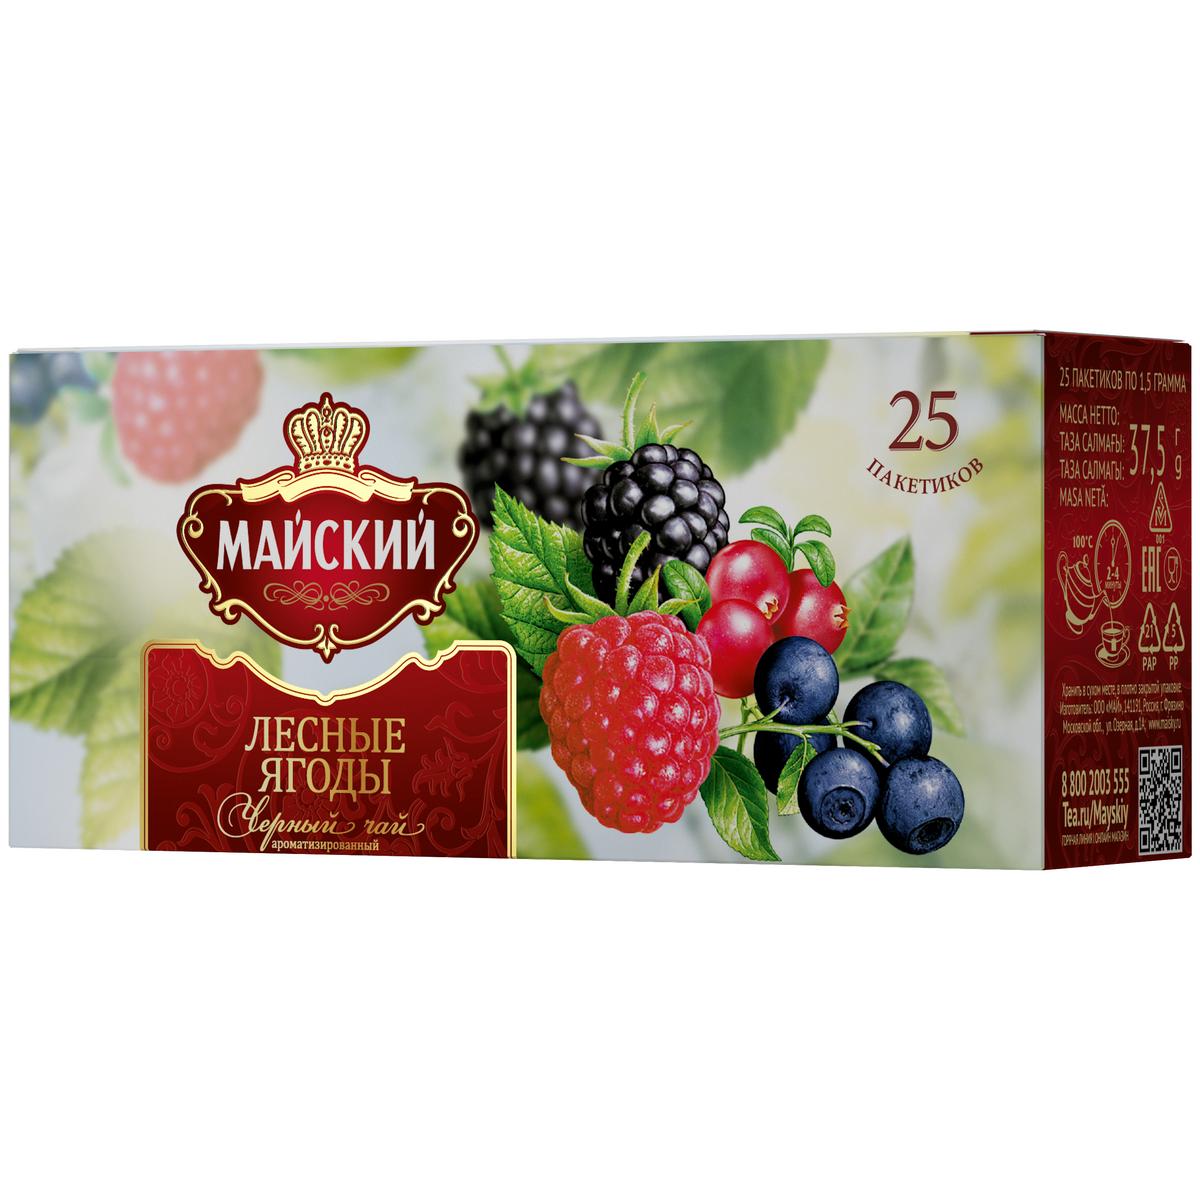 Чай черный Майский лесные ягоды 25 пакетиков - отзывы покупателей намаркетплейсе Мегамаркет